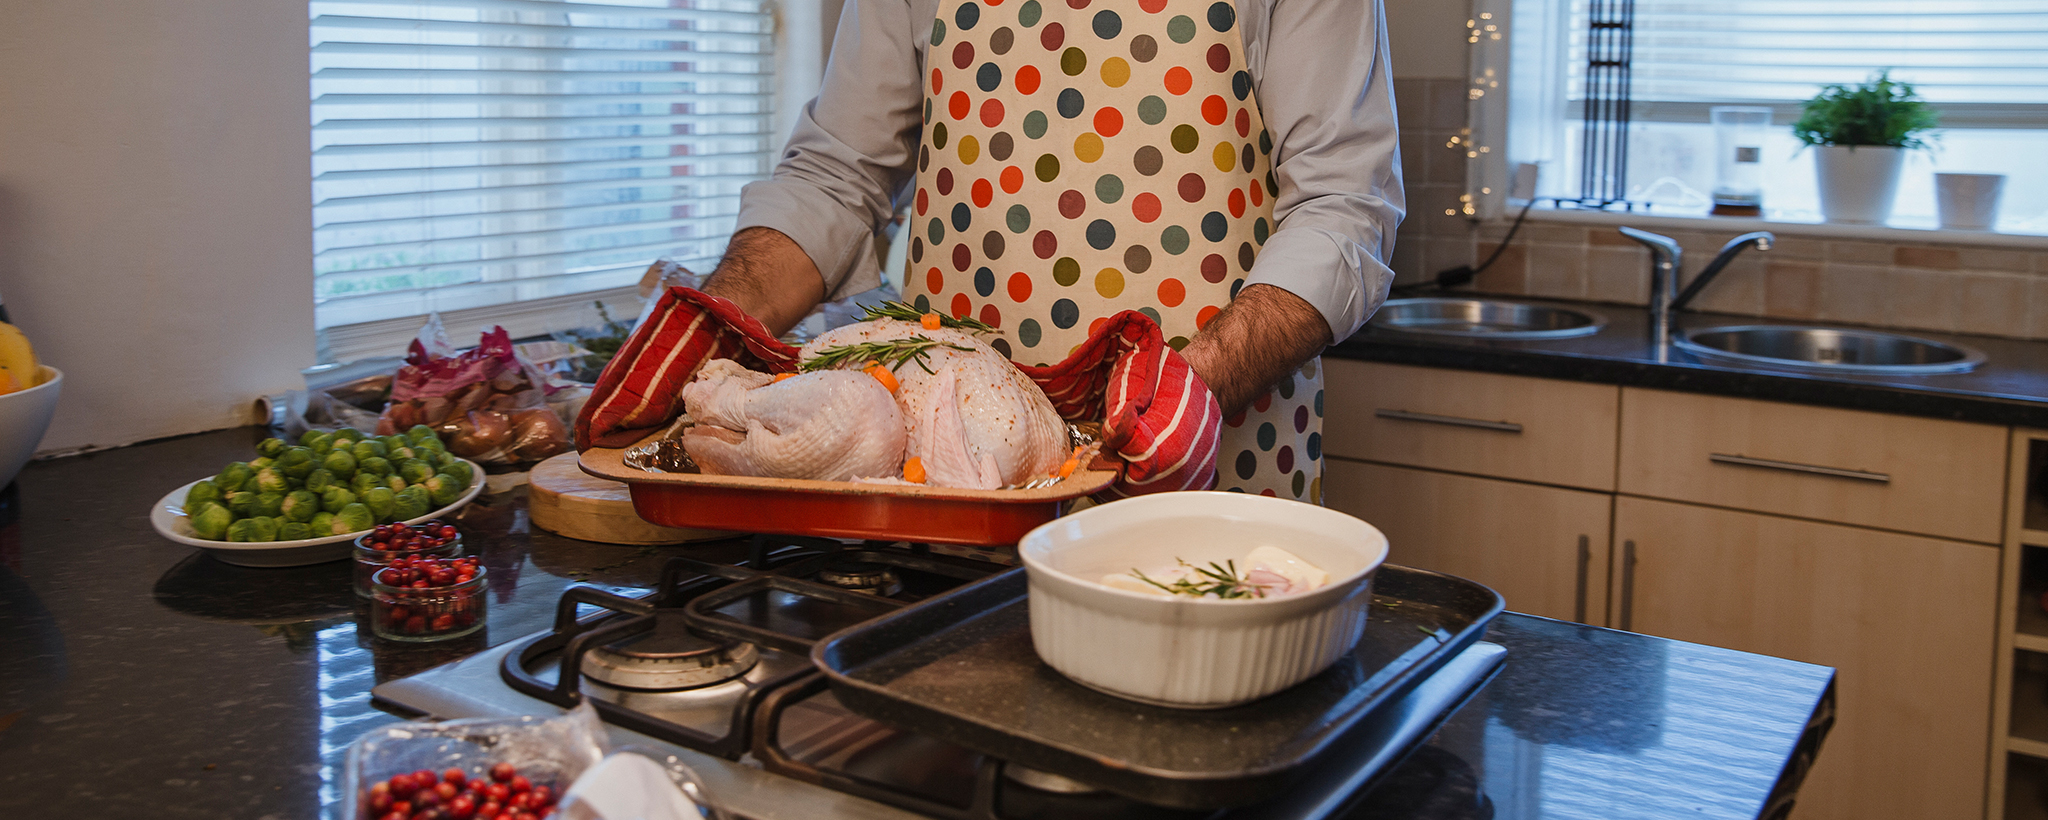 un hombre prepara un pavo navideño para poner en el horno